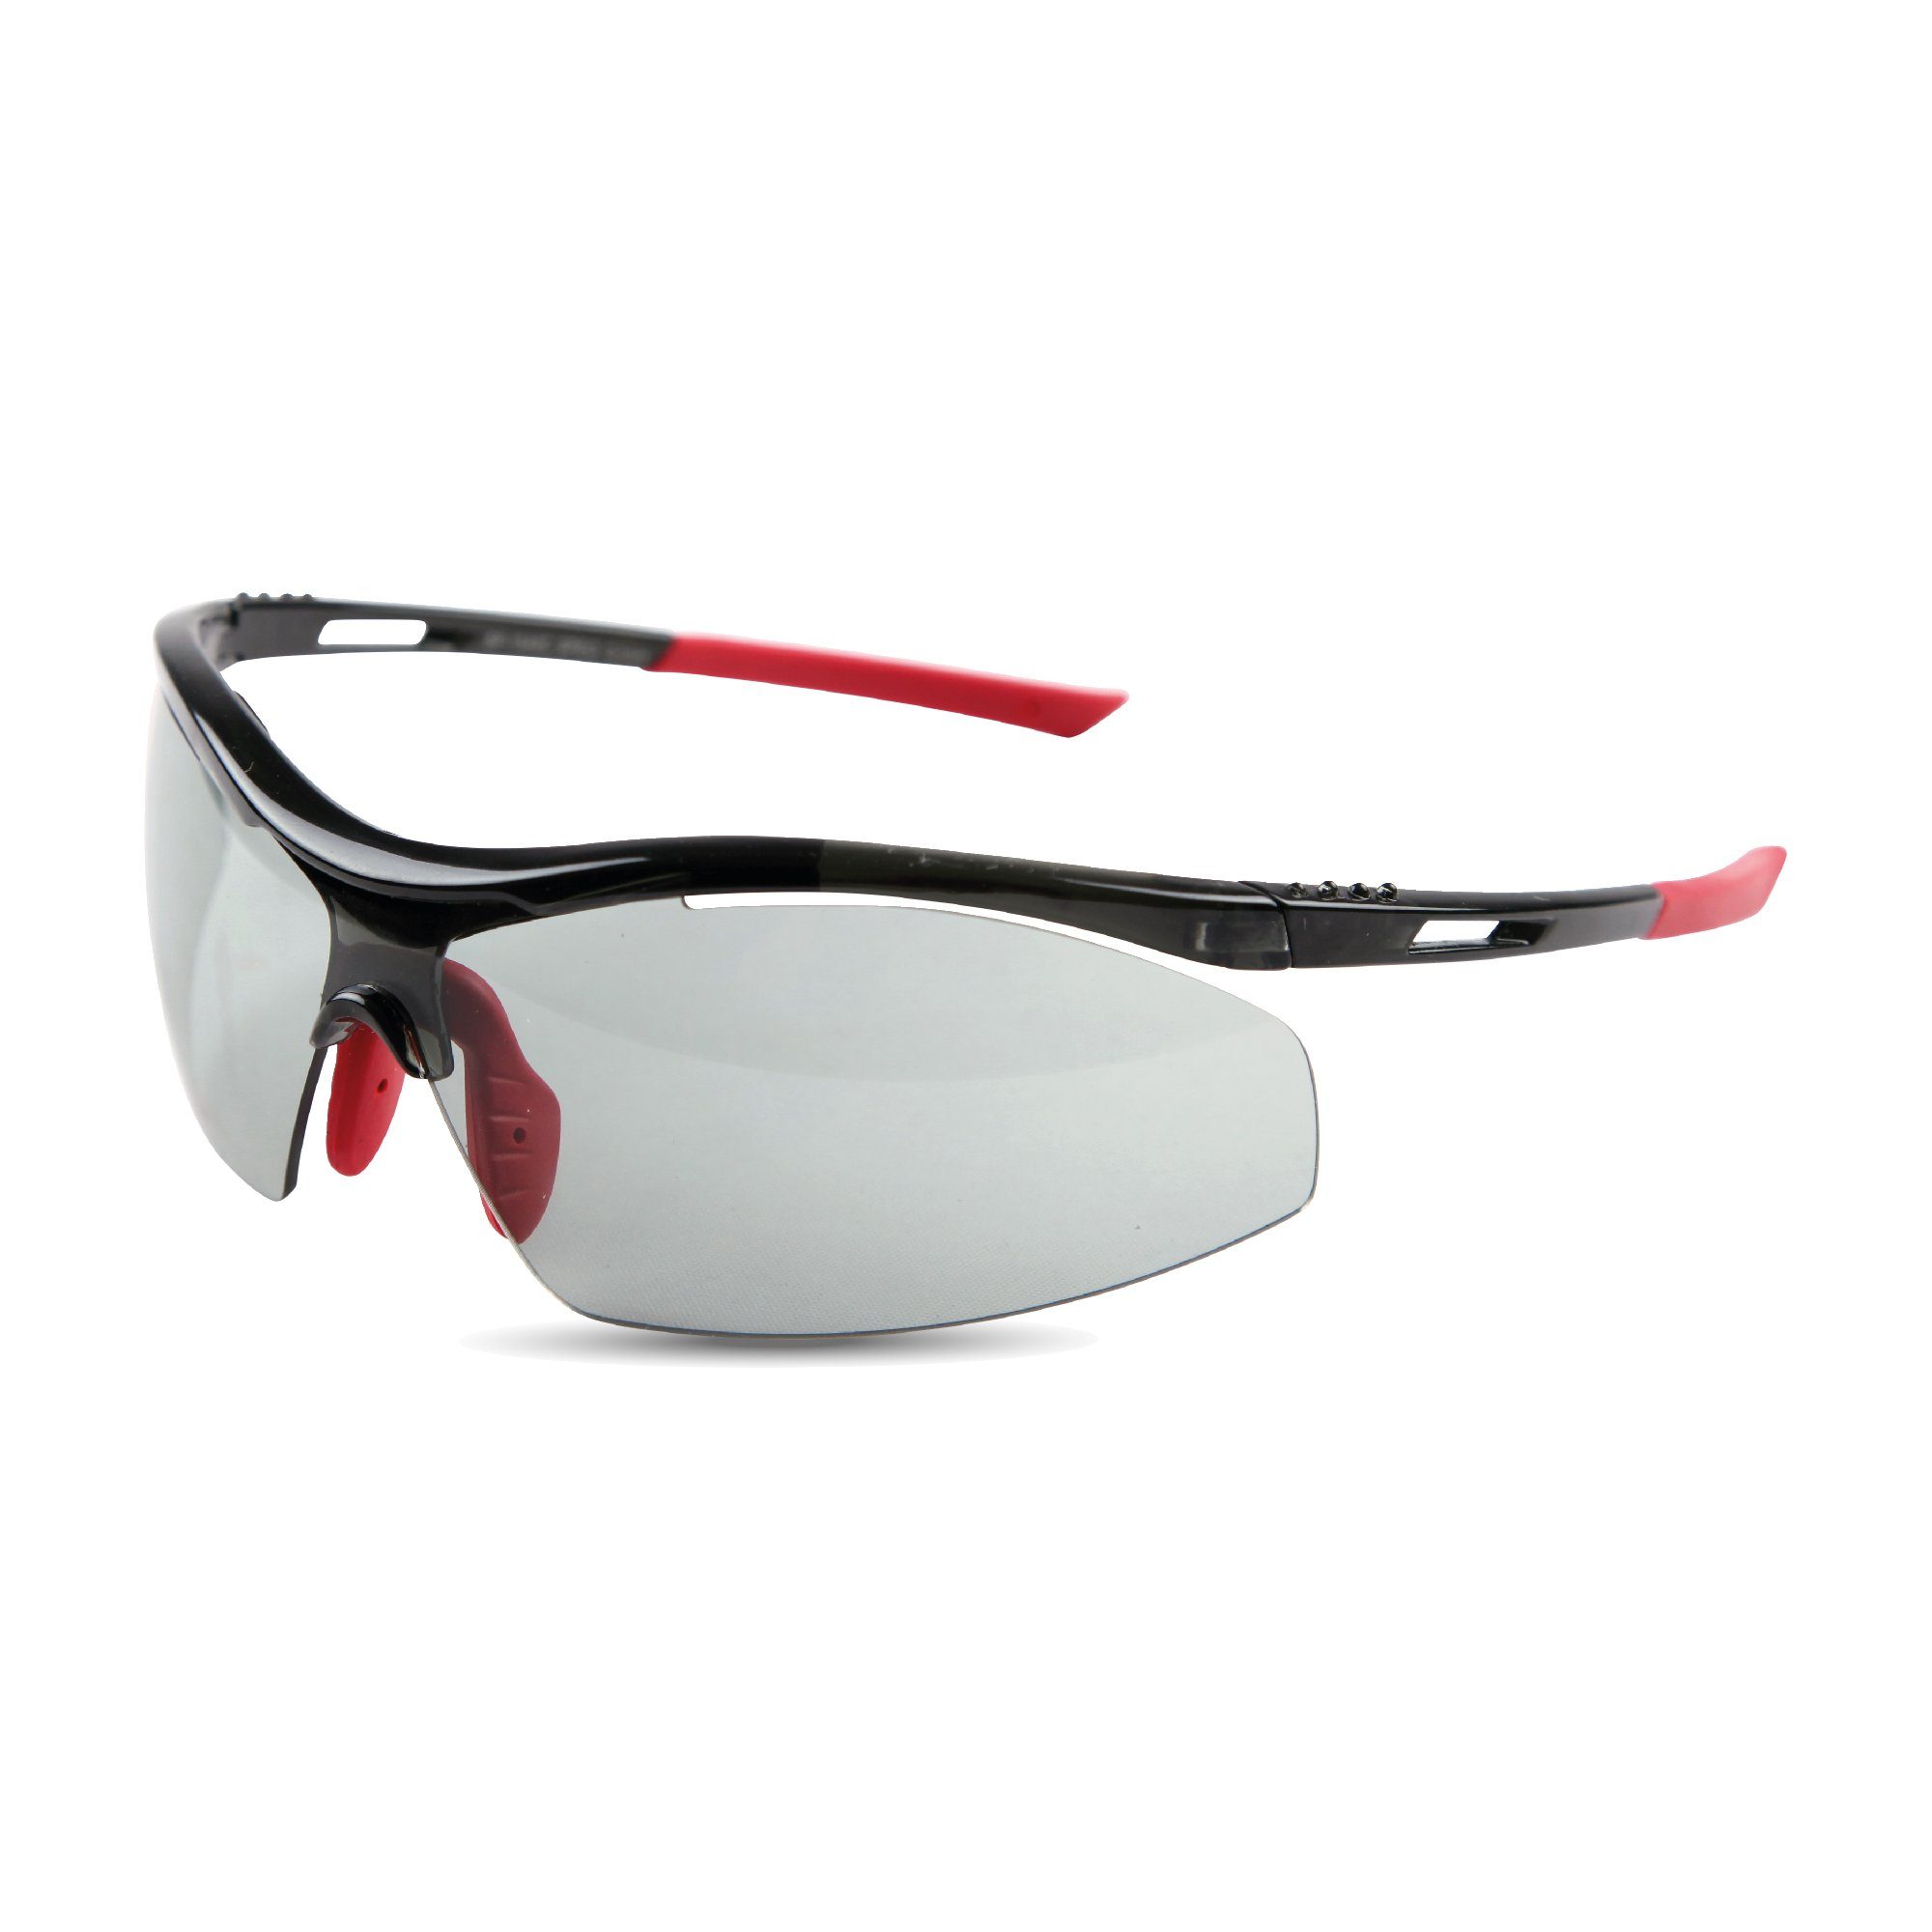 1-St), Sportbrille Rot - Sportsonnenbrille, 06498 Skibrille, selbstönende Fahrradbrille sonnenschutz UV-Schutzbrille (Packung, - Bestlivings